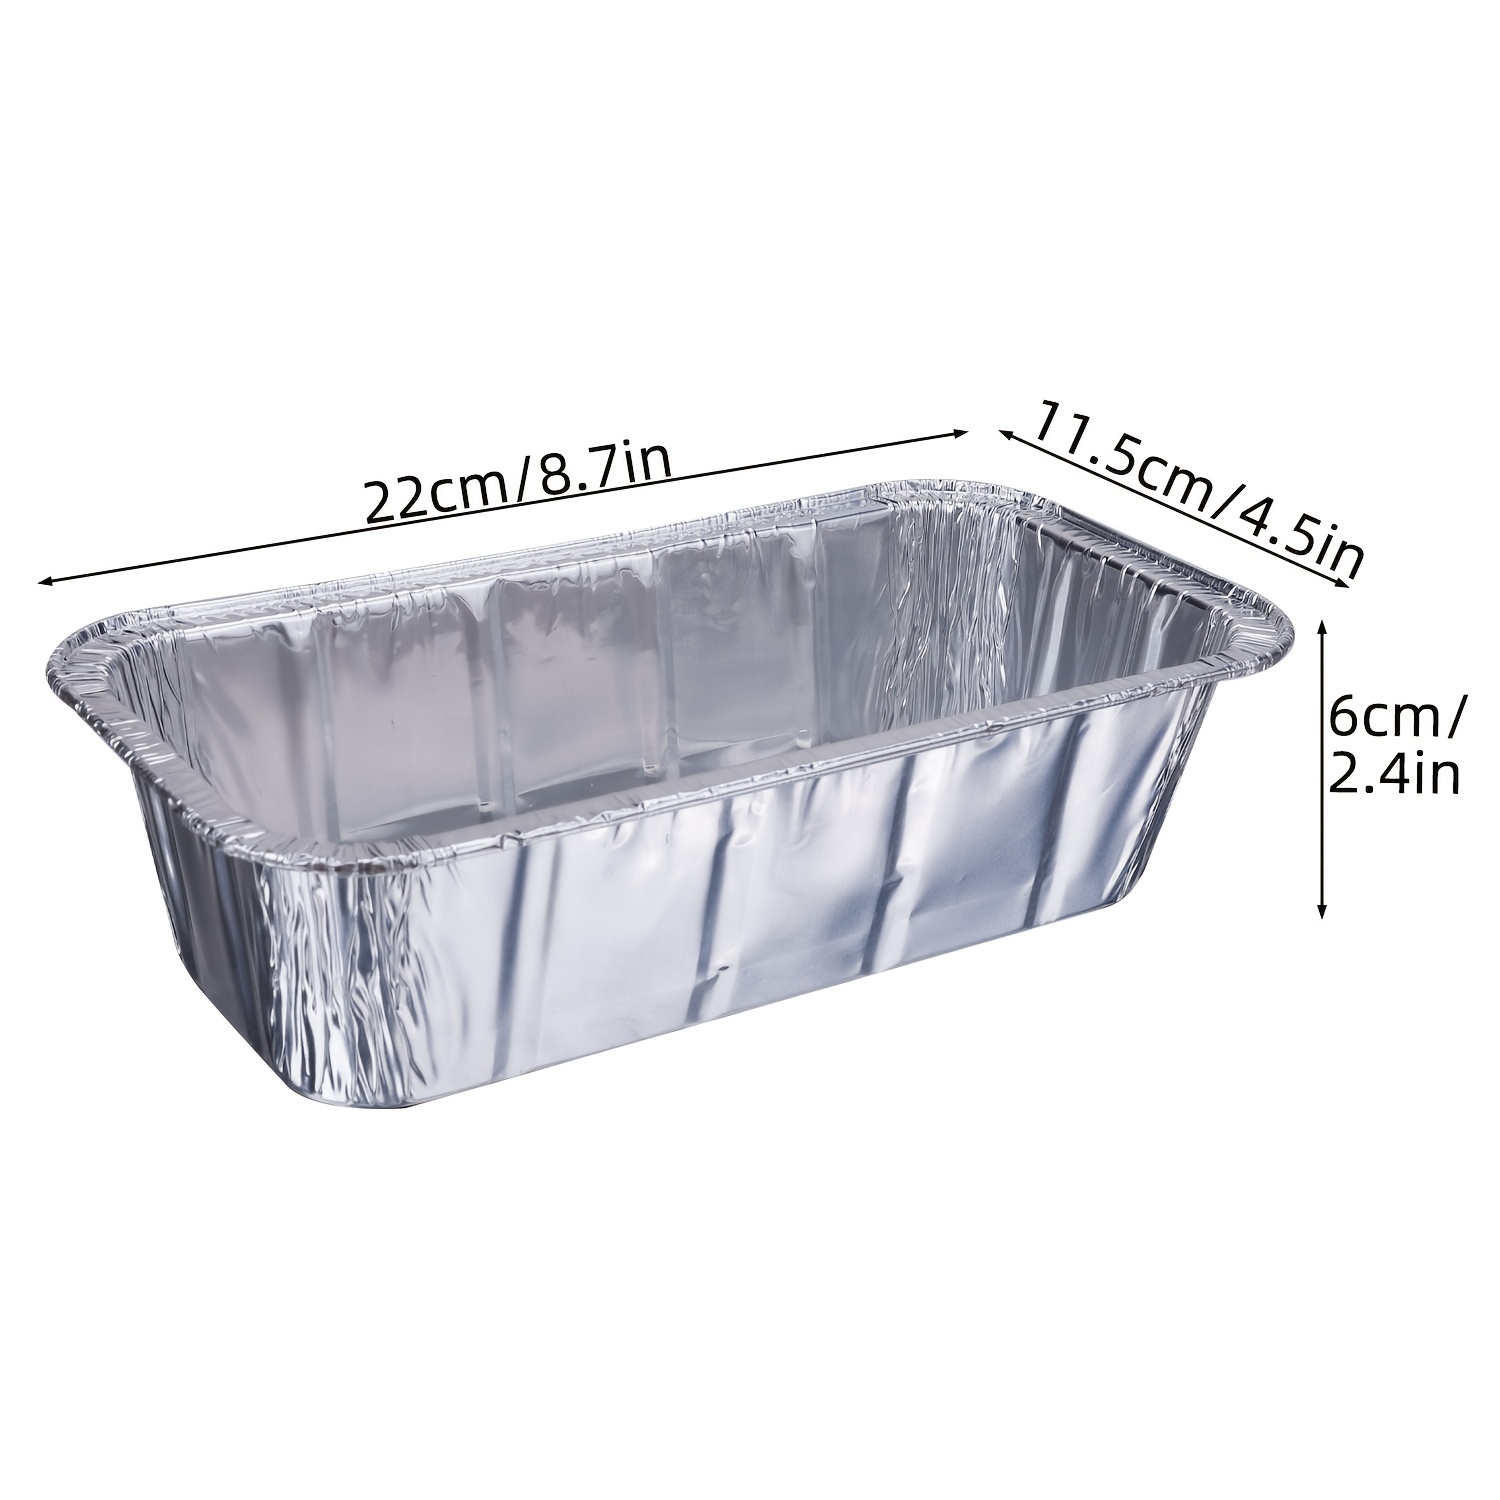 9x13 Half Size Aluminum Foil Pan Disposable Baking Pans, Square